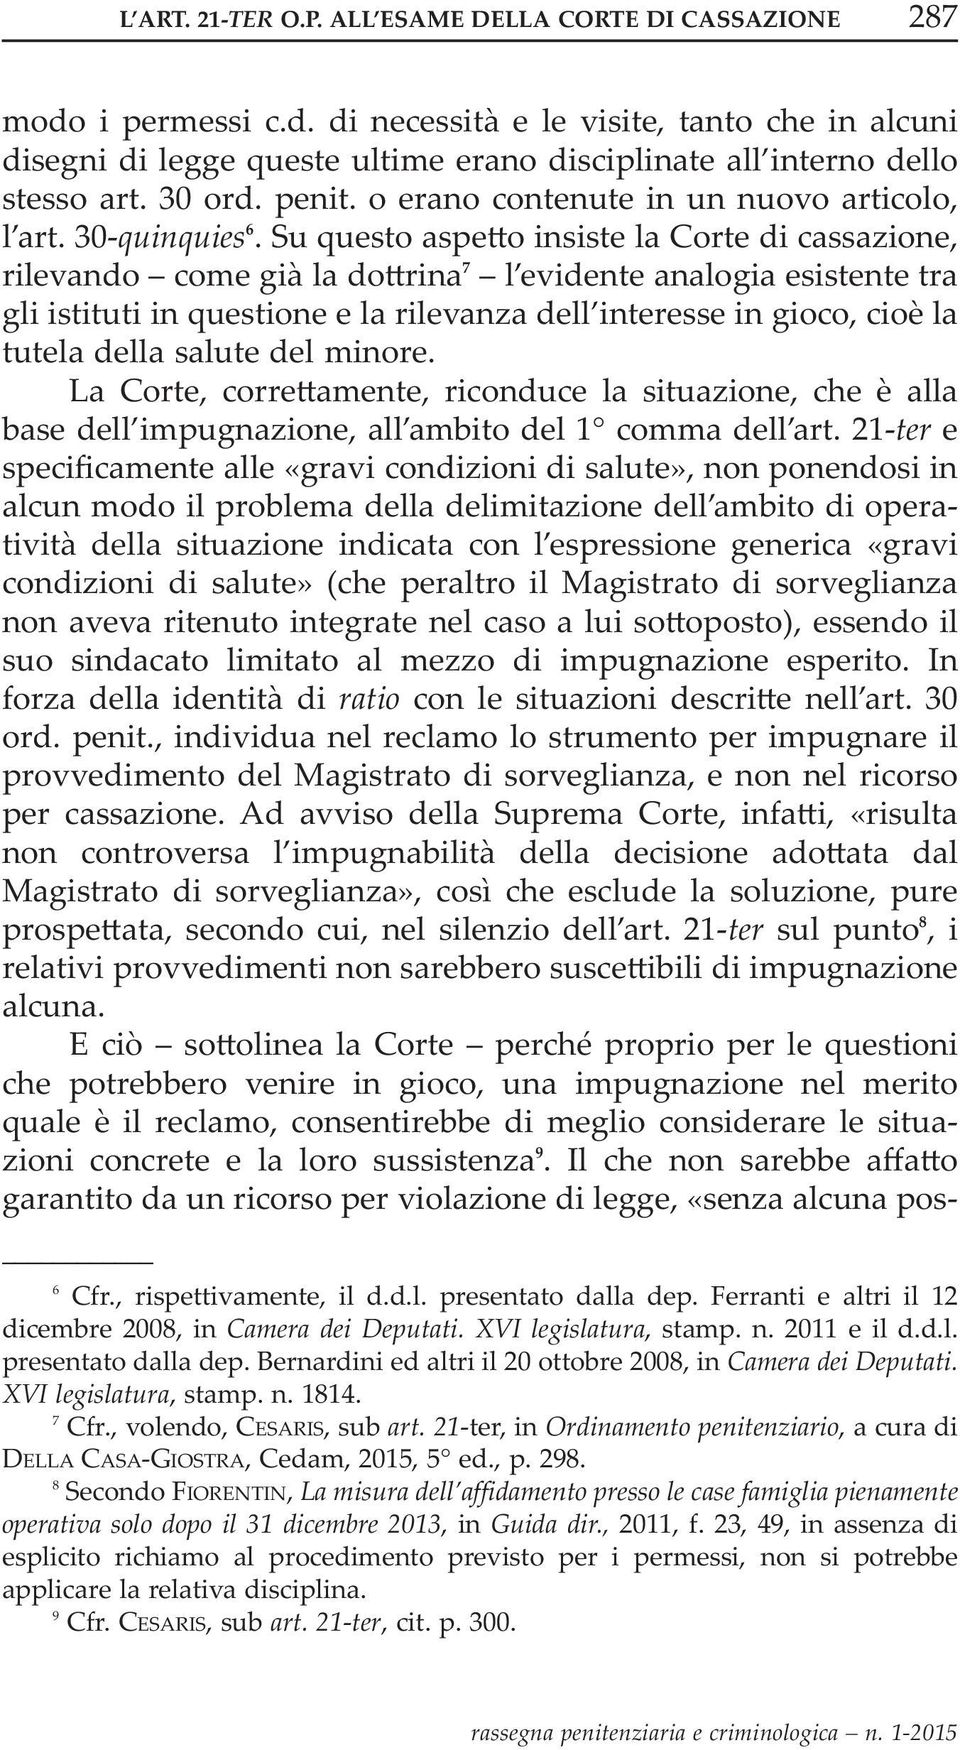 21-ter, in Ordinamento penitenziario, a cura di della Casa-GiOstra, Cedam, 2015, 5 ed., p. 298.